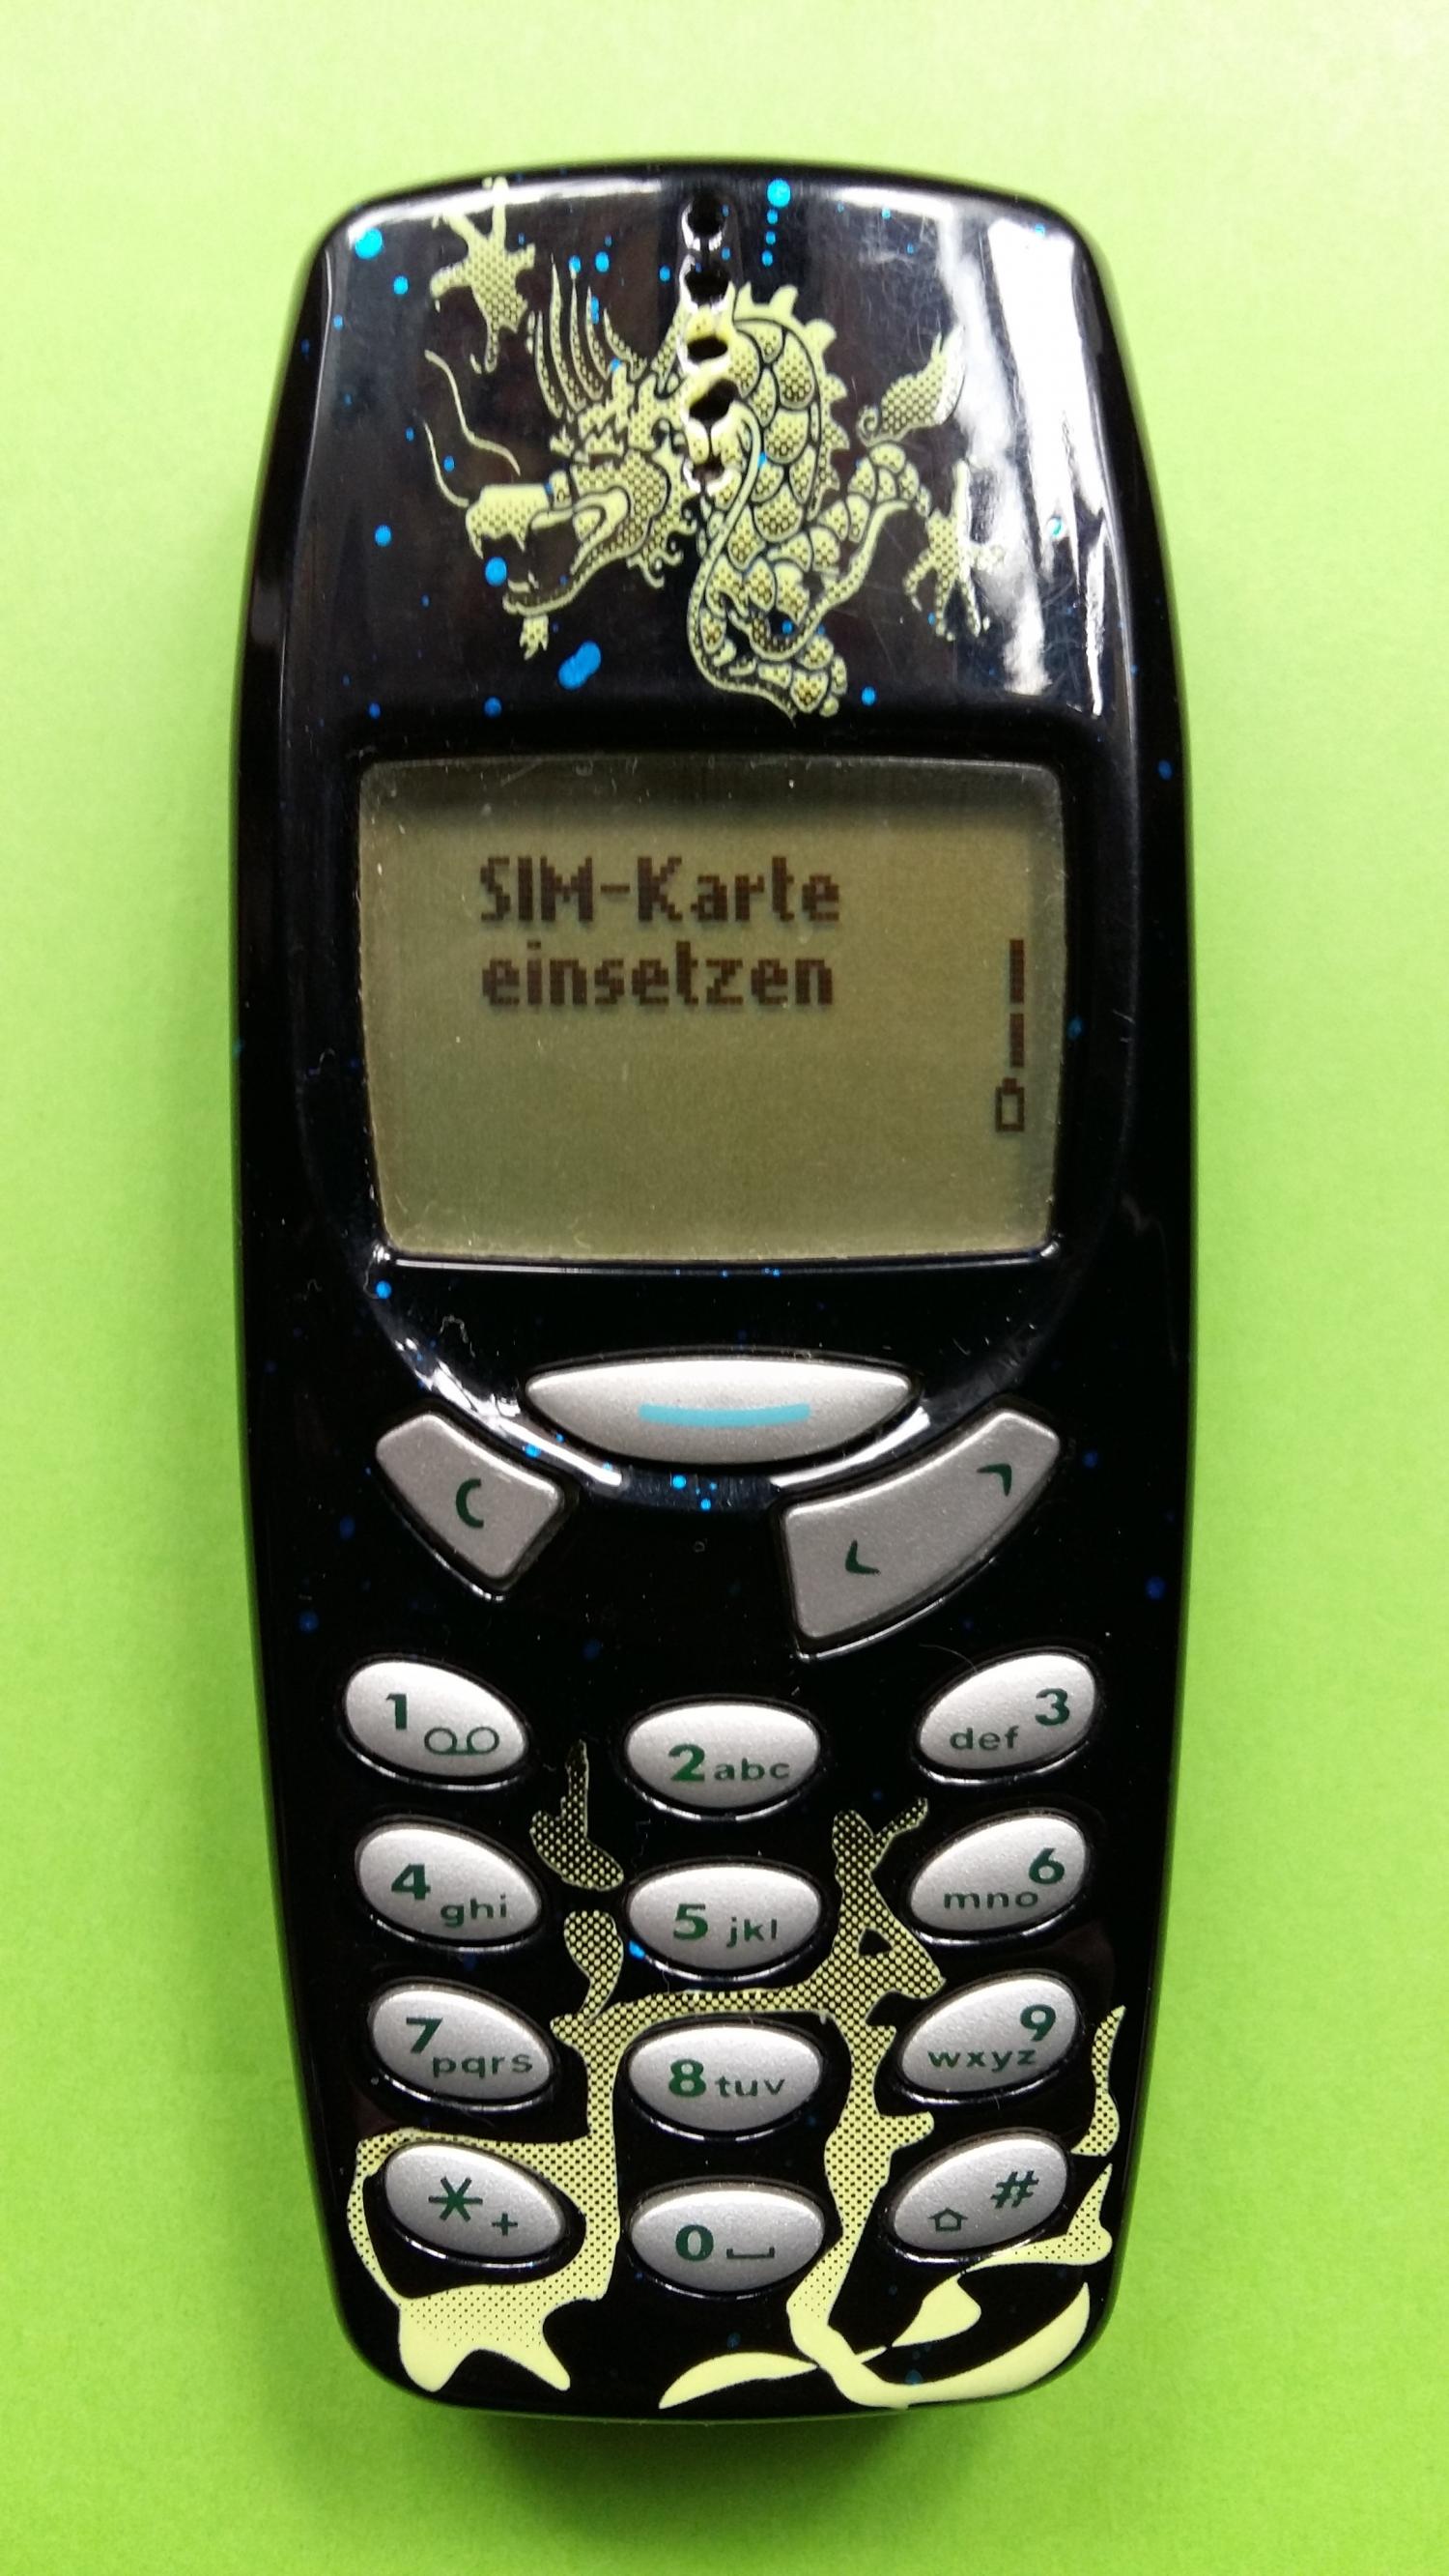 image-7306298-Nokia 3310 (23)1.jpg